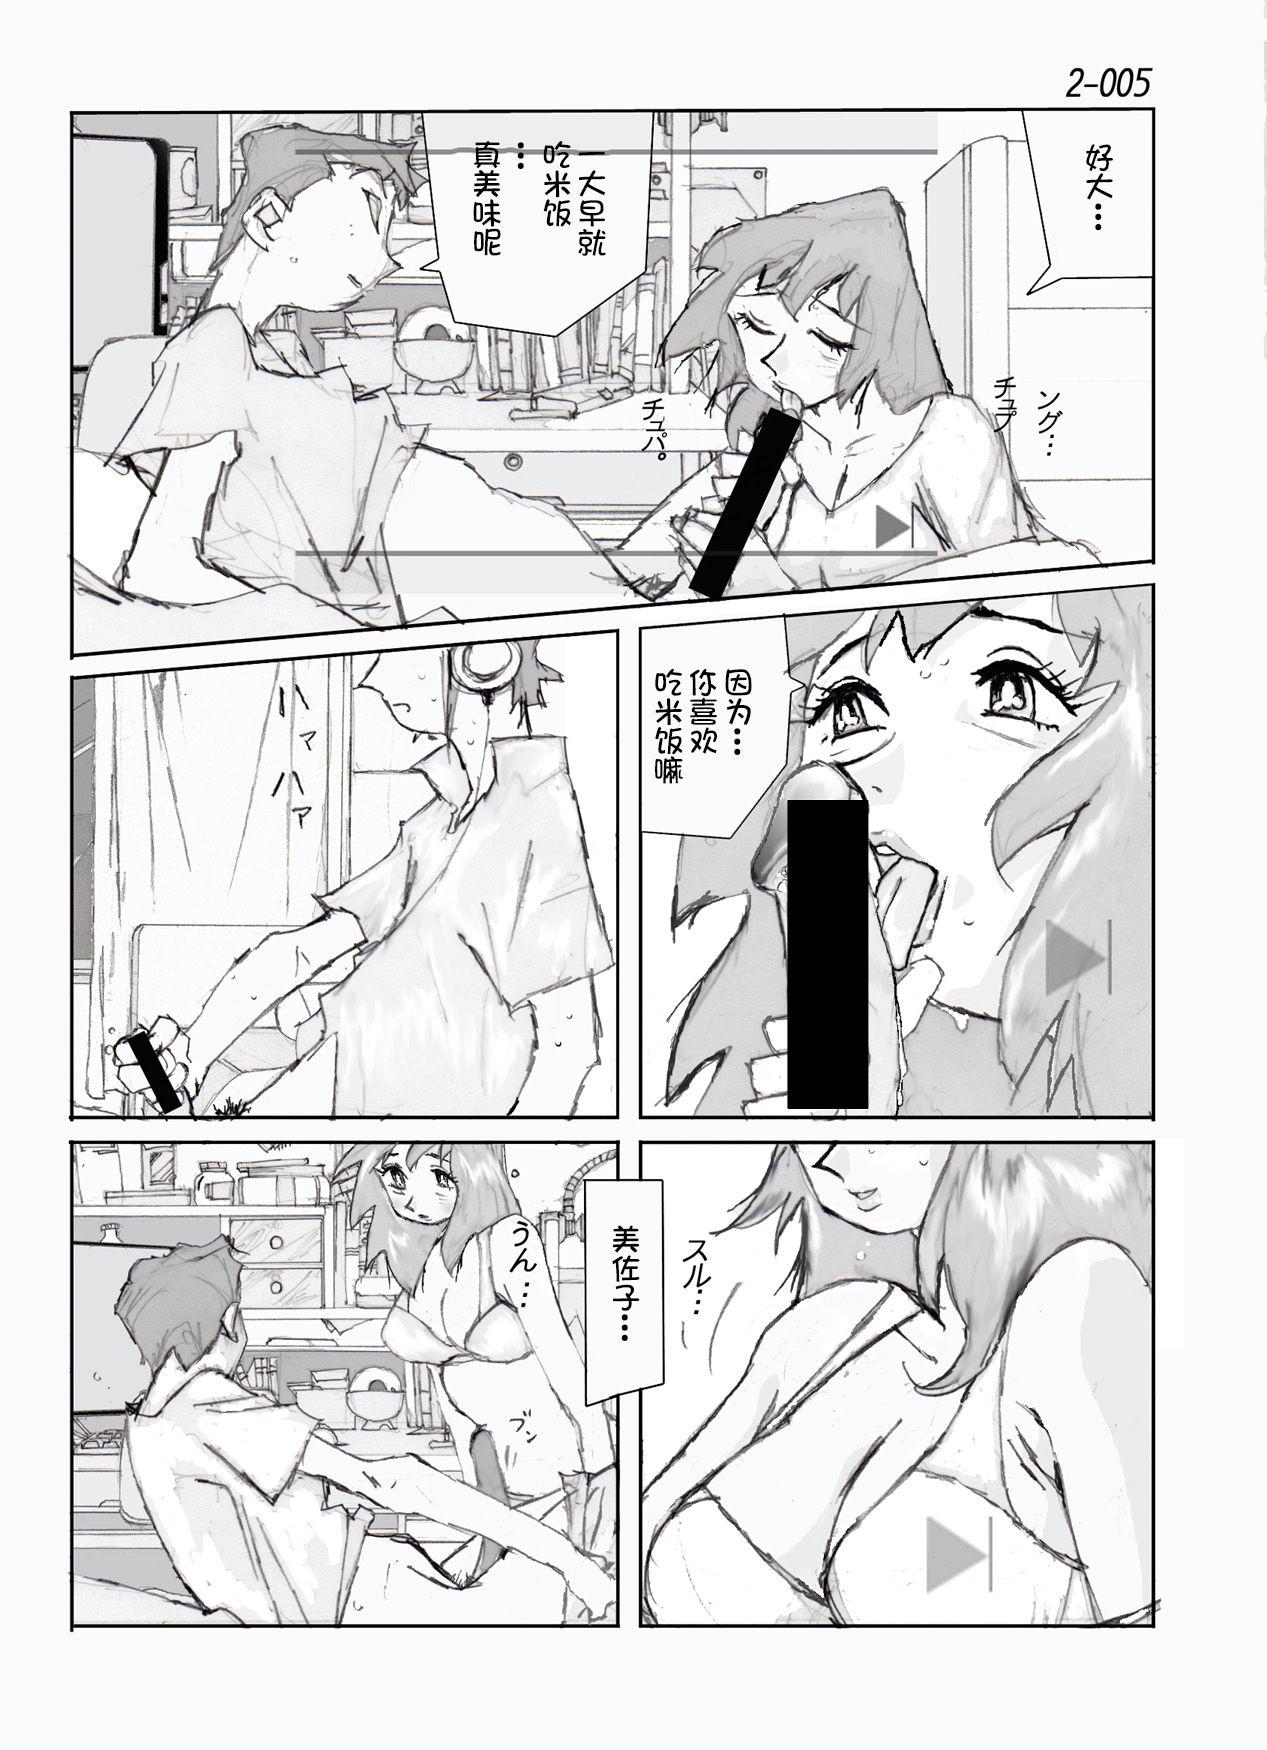 Hard Core Porn Kamo no Aji - Misako 2 - Original Stunning - Page 6